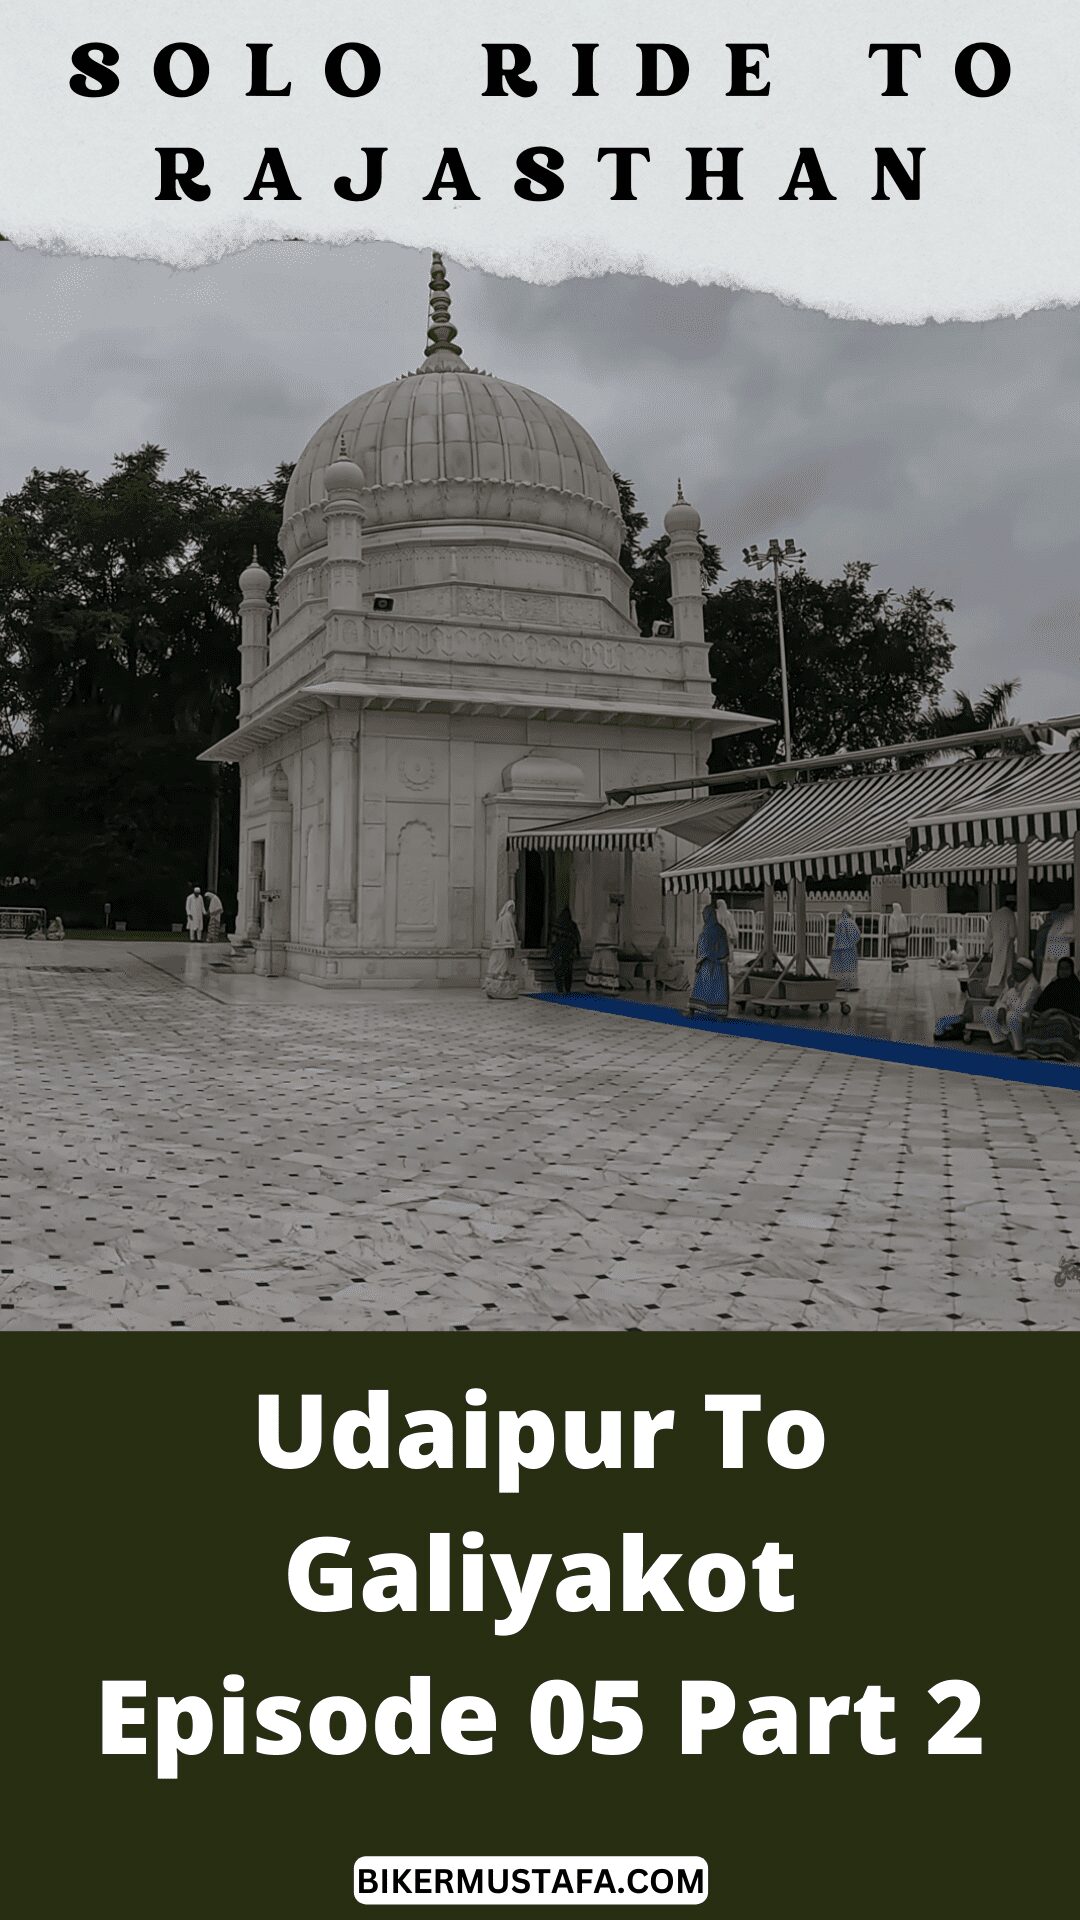 Rajasthan Ride Udaipur To Galiakot Episode 05